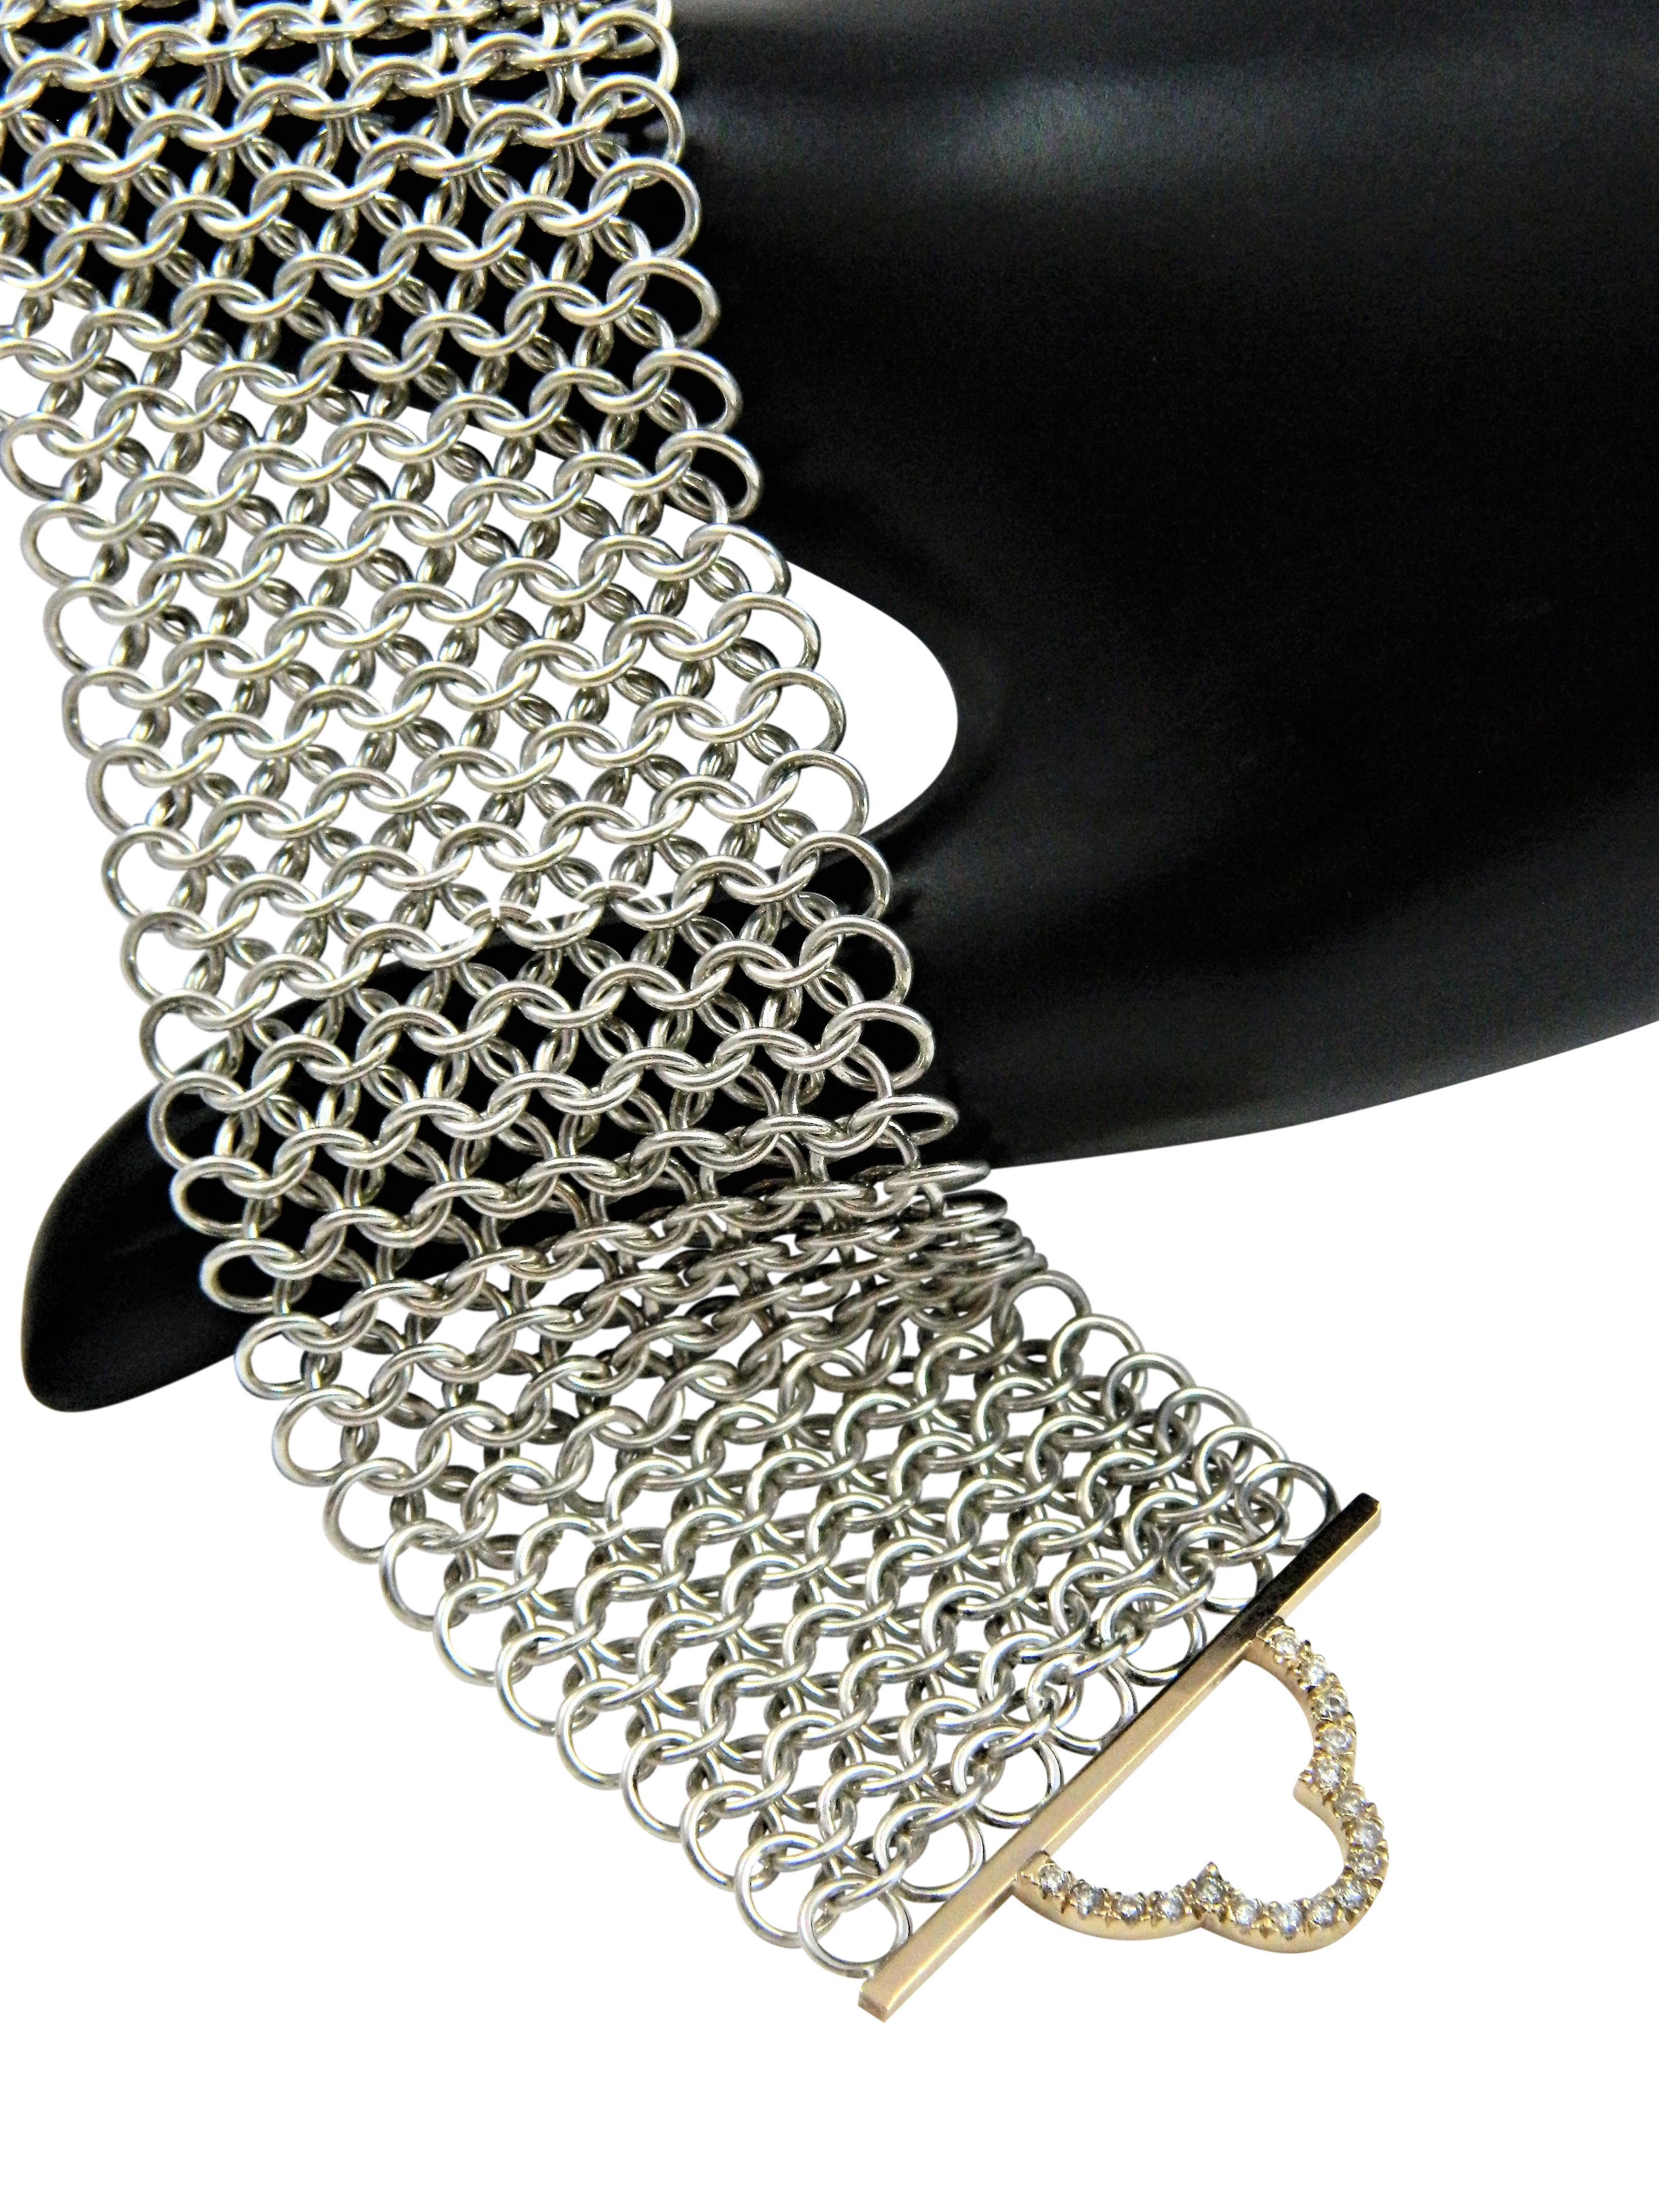 Taille brillant Bracelet de puissance déco avec diamants, argent, or 14K et cotte de mailles de fabrication japonaise en vente